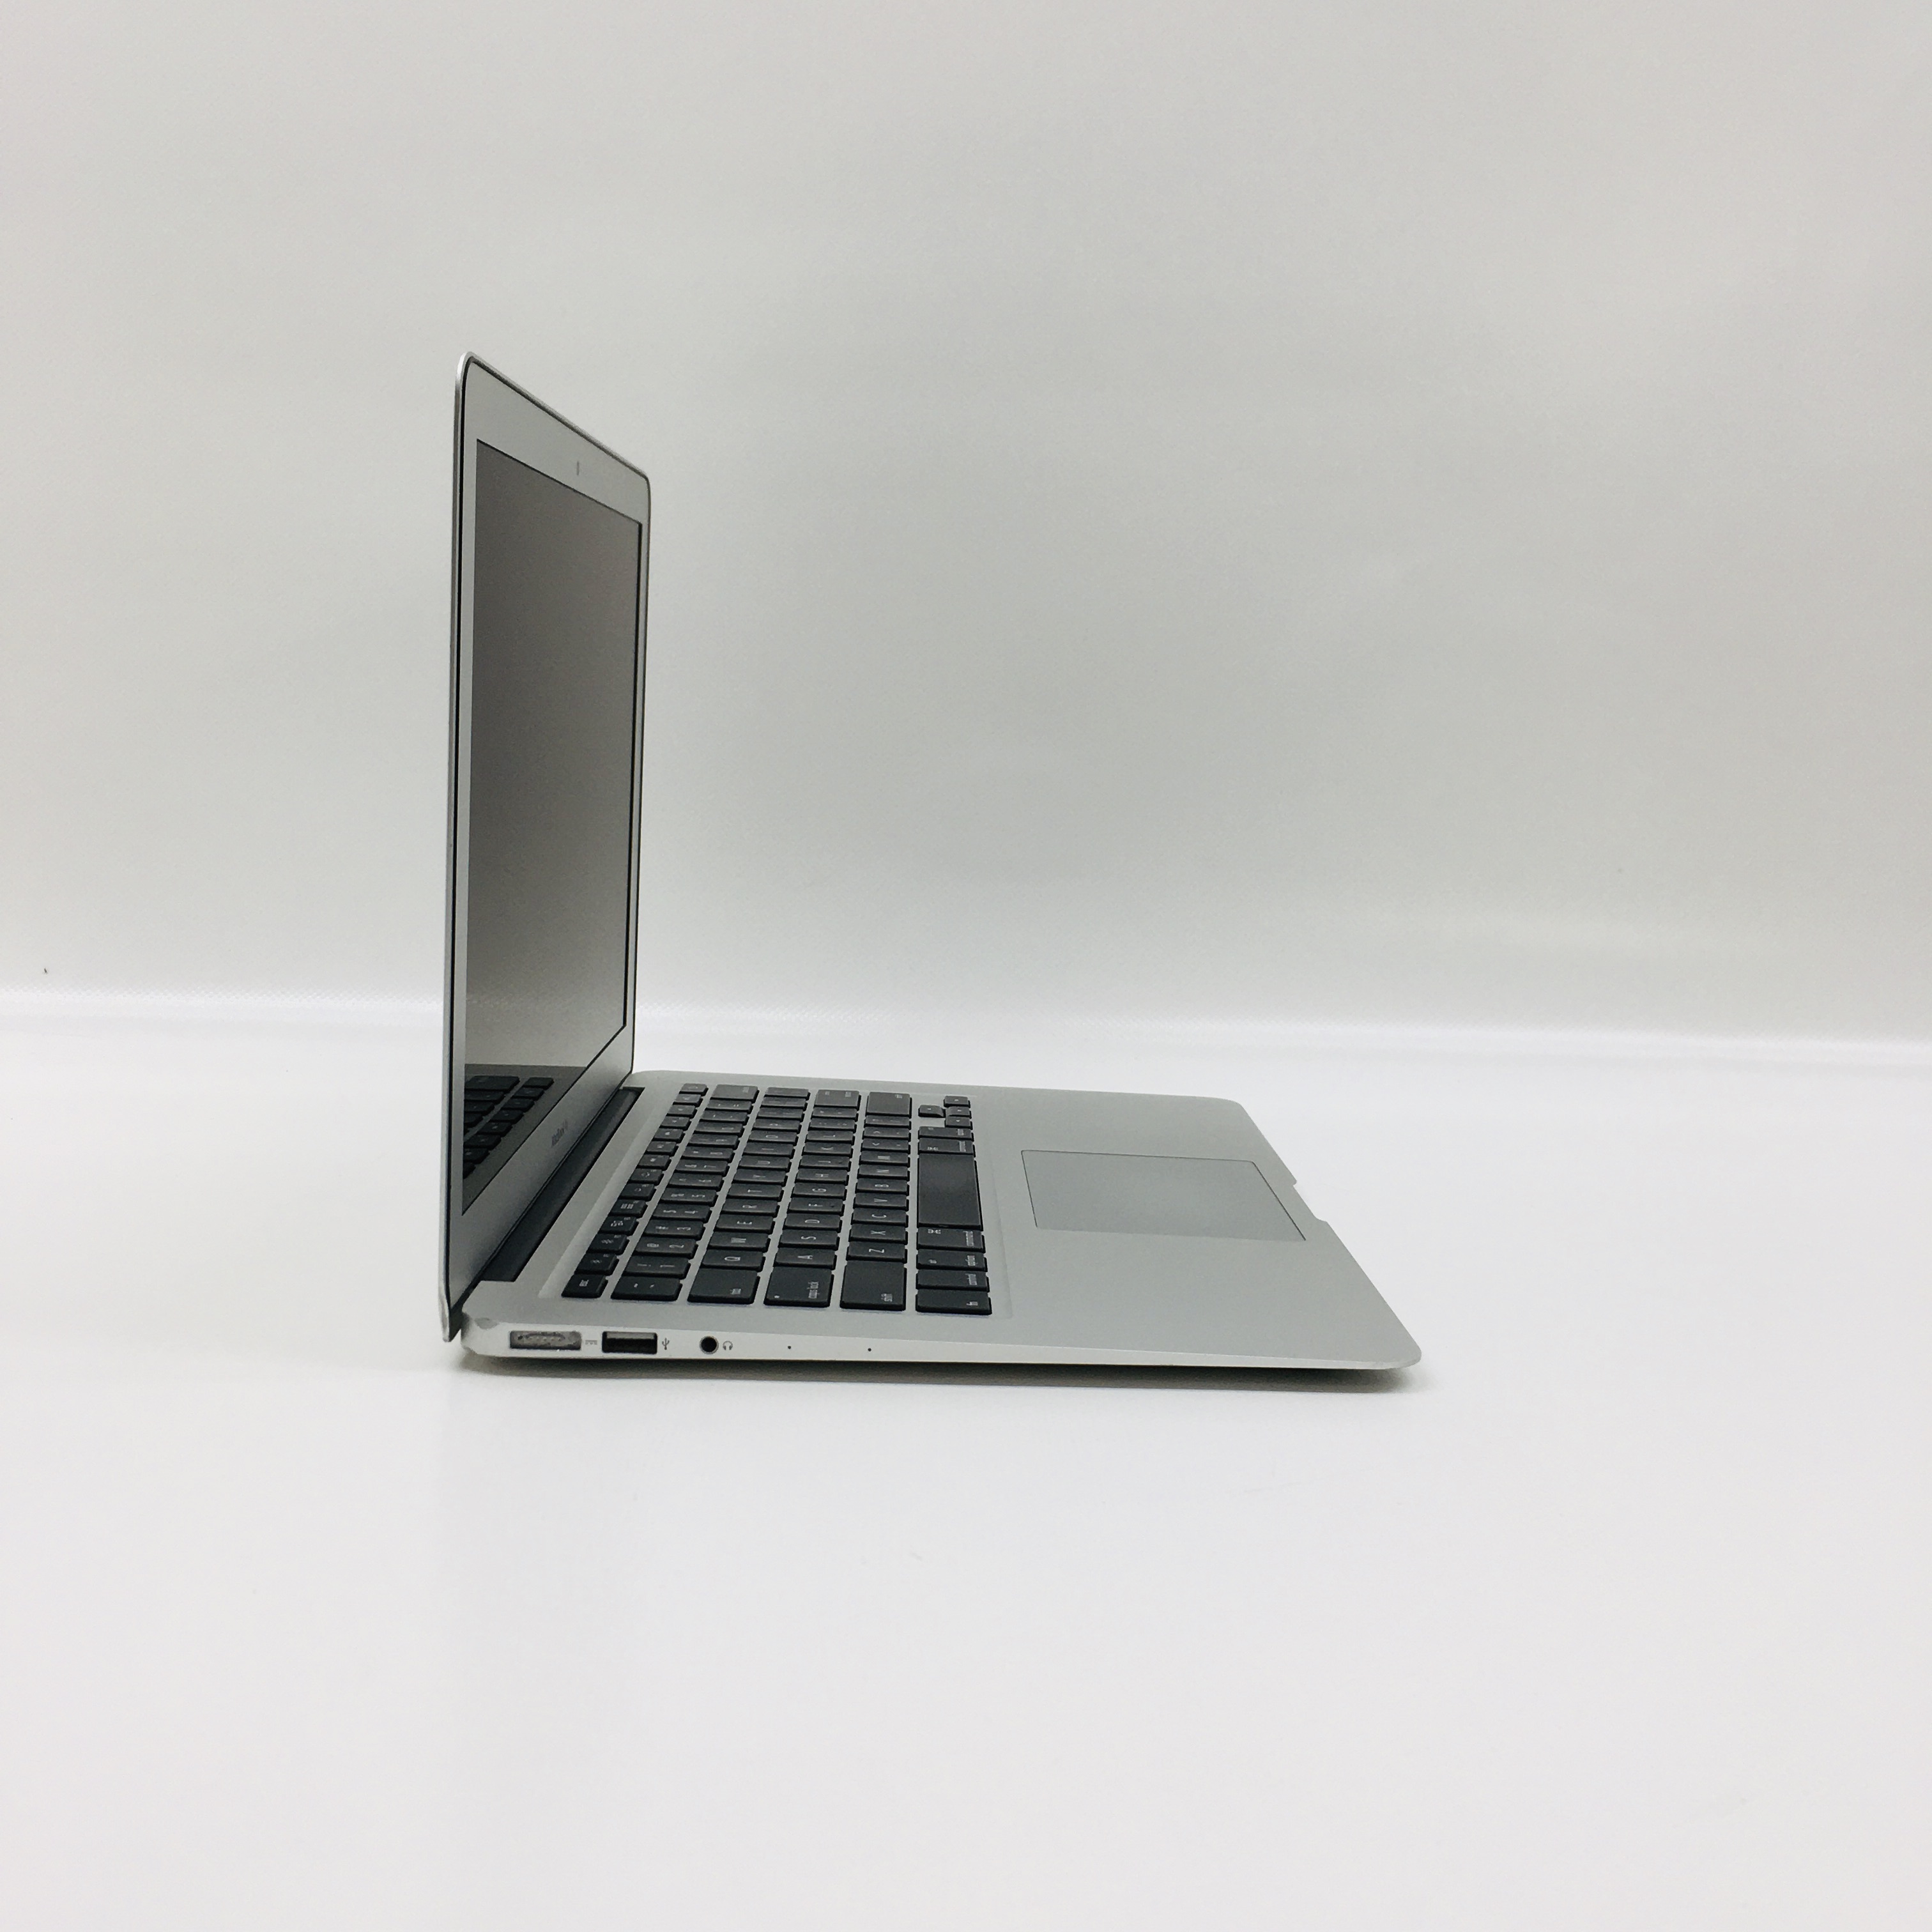 MacBook Air 13" Mid 2013 (Intel Core i5 1.3 GHz 4 GB RAM 128 GB SSD), Intel Core i5 1.3 GHz, 4 GB RAM, 128 GB SSD, image 2